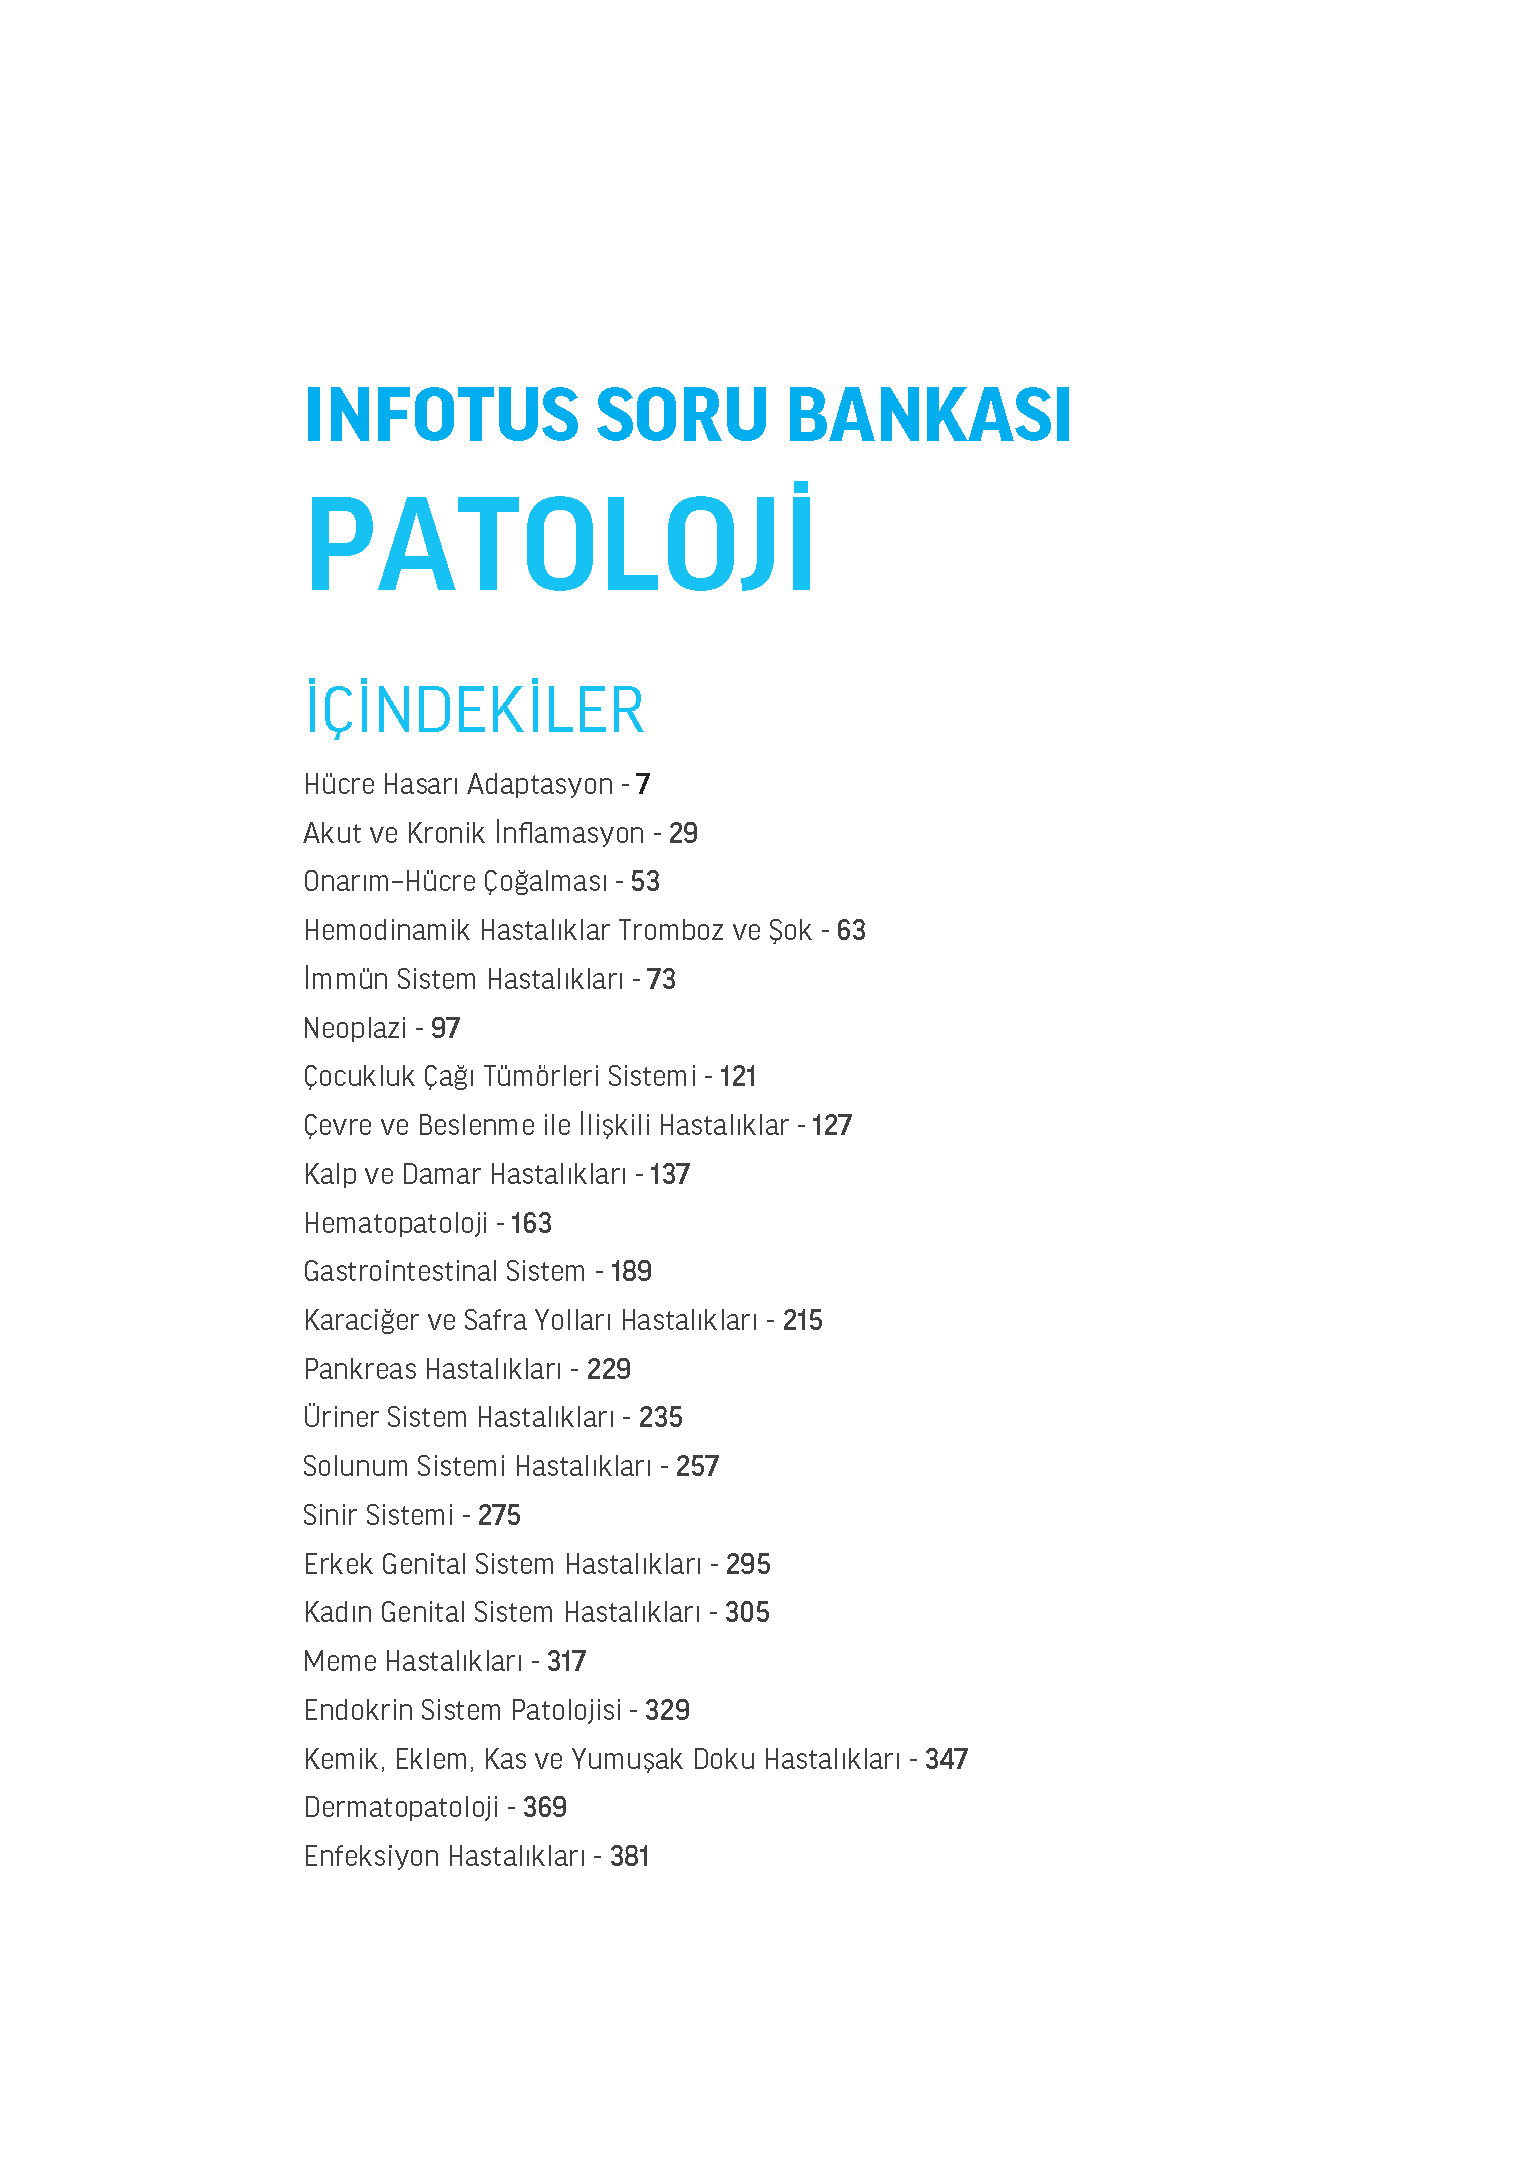 INFOTUS SORU BANKASI PATOLOJI_Page_003